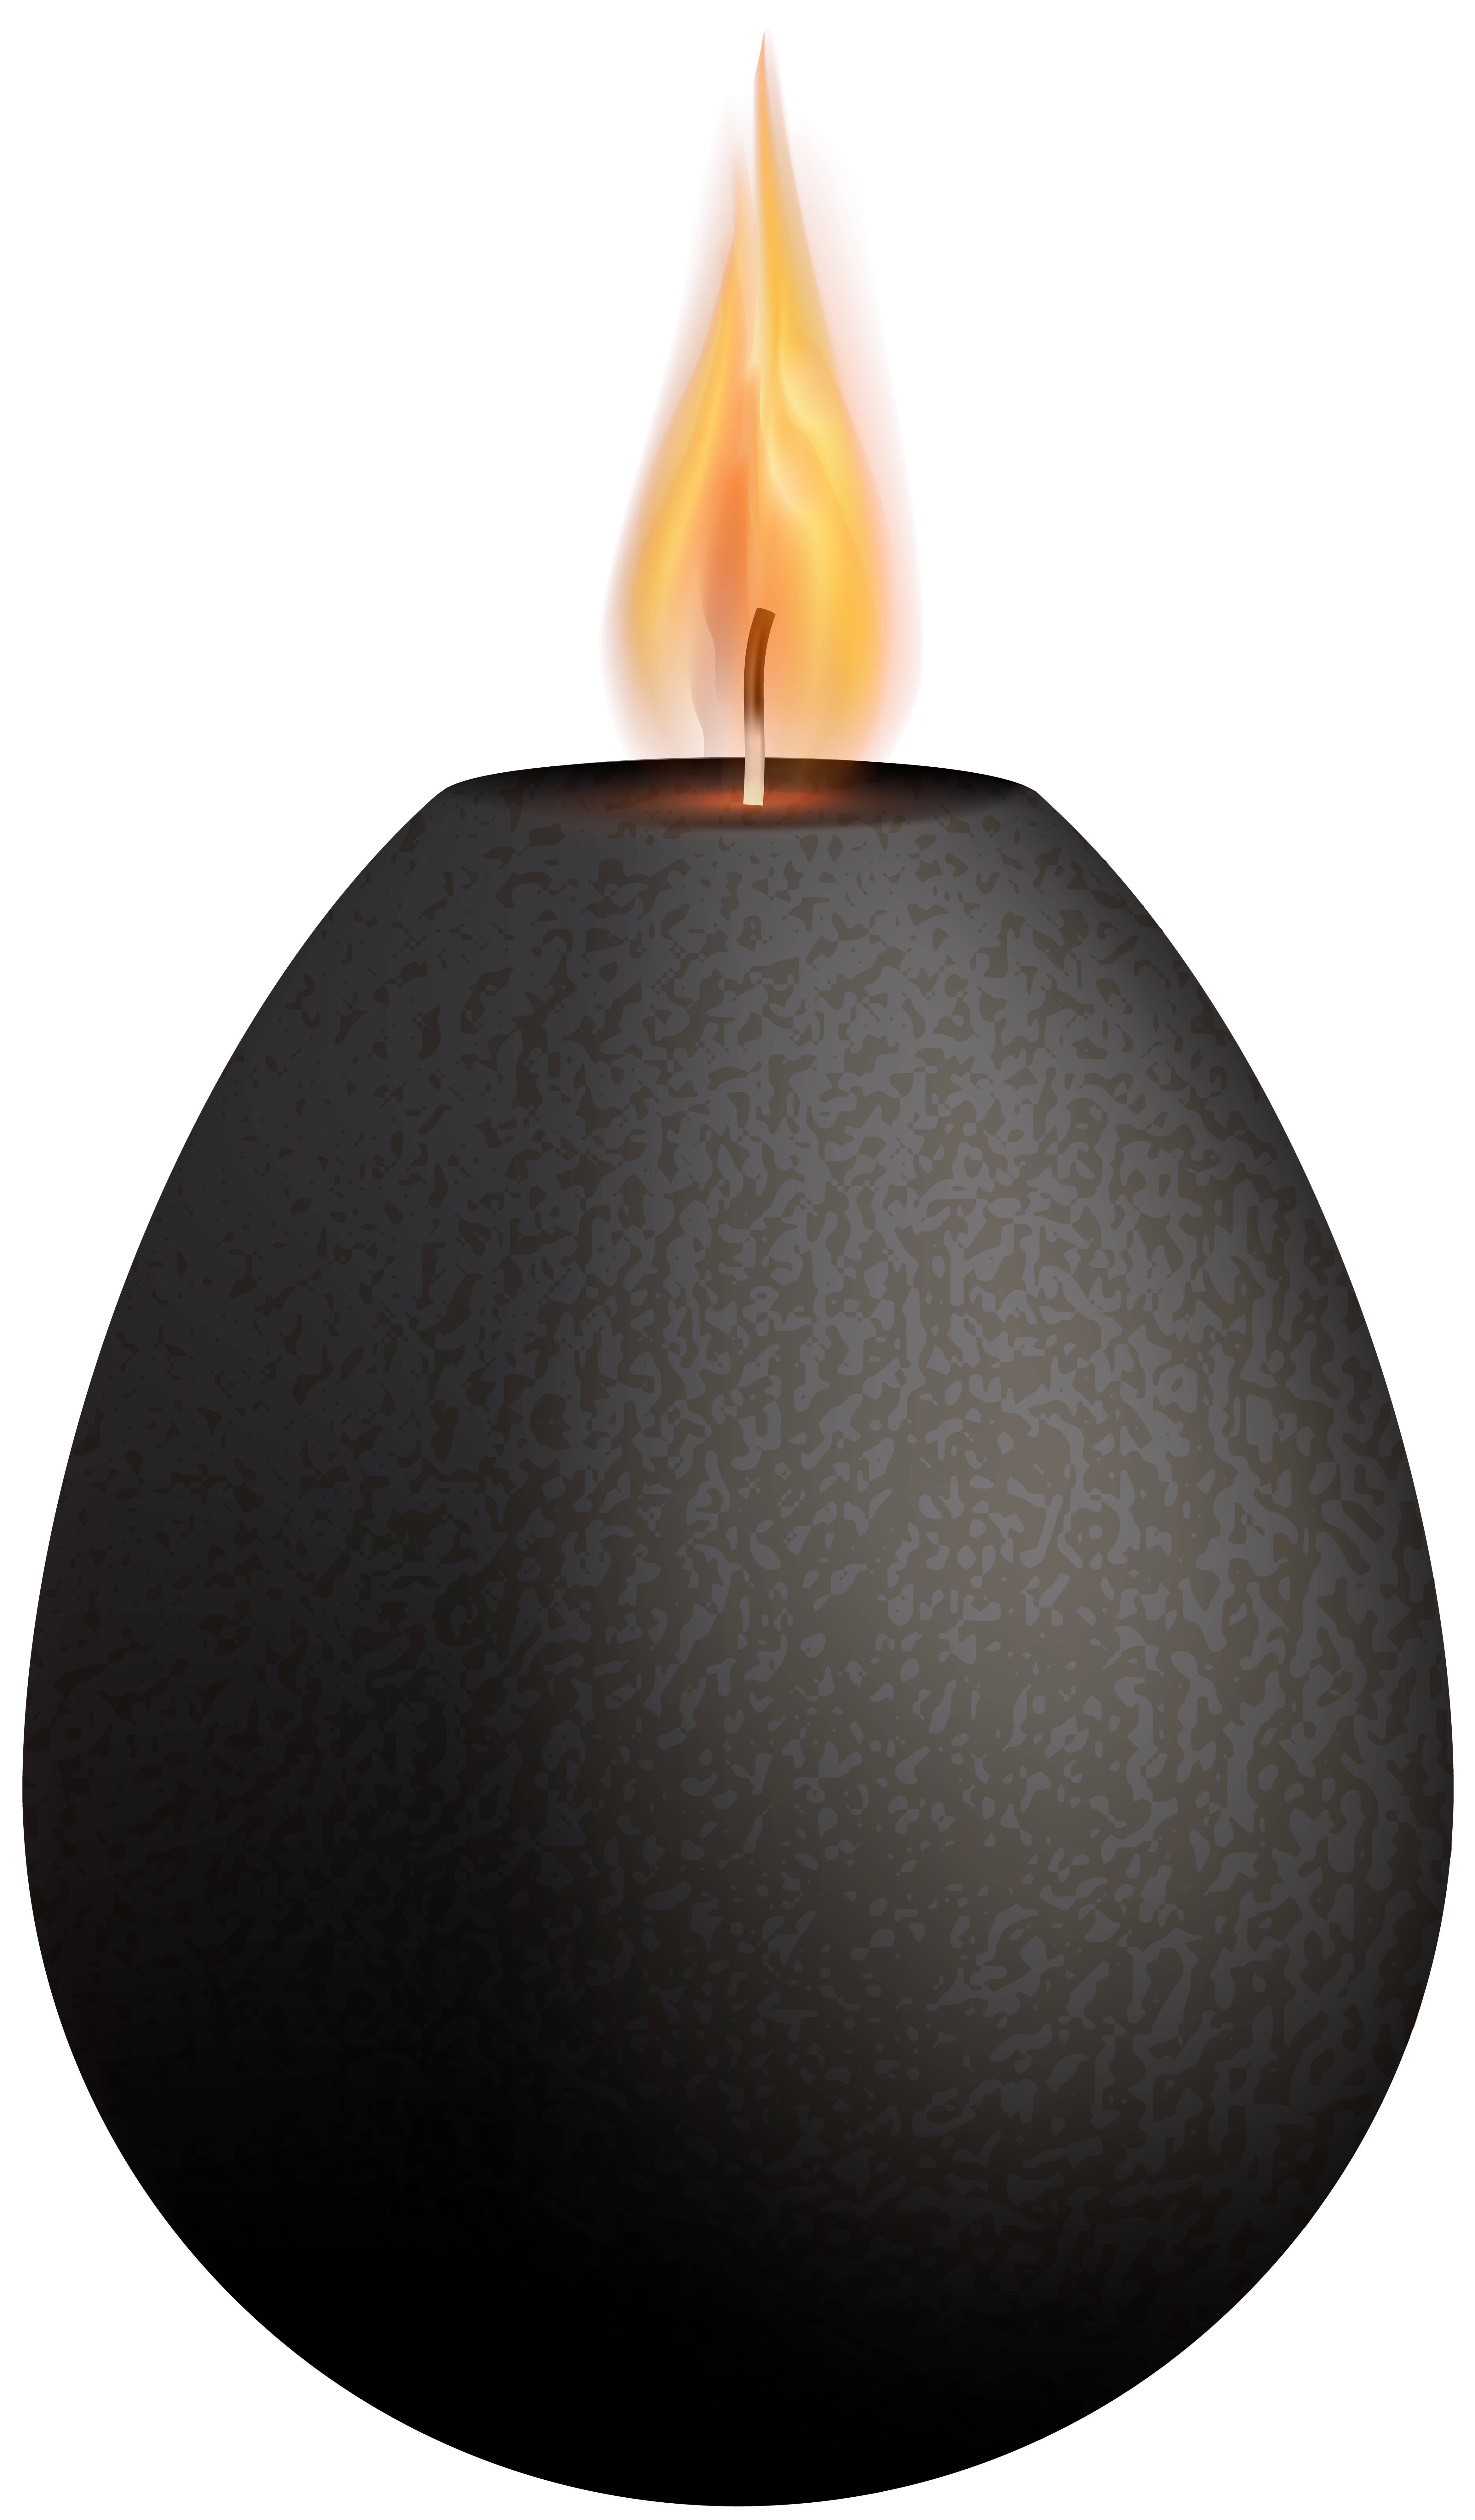 Black Deco Candle PNG Clip Art - Best WEB Clipart